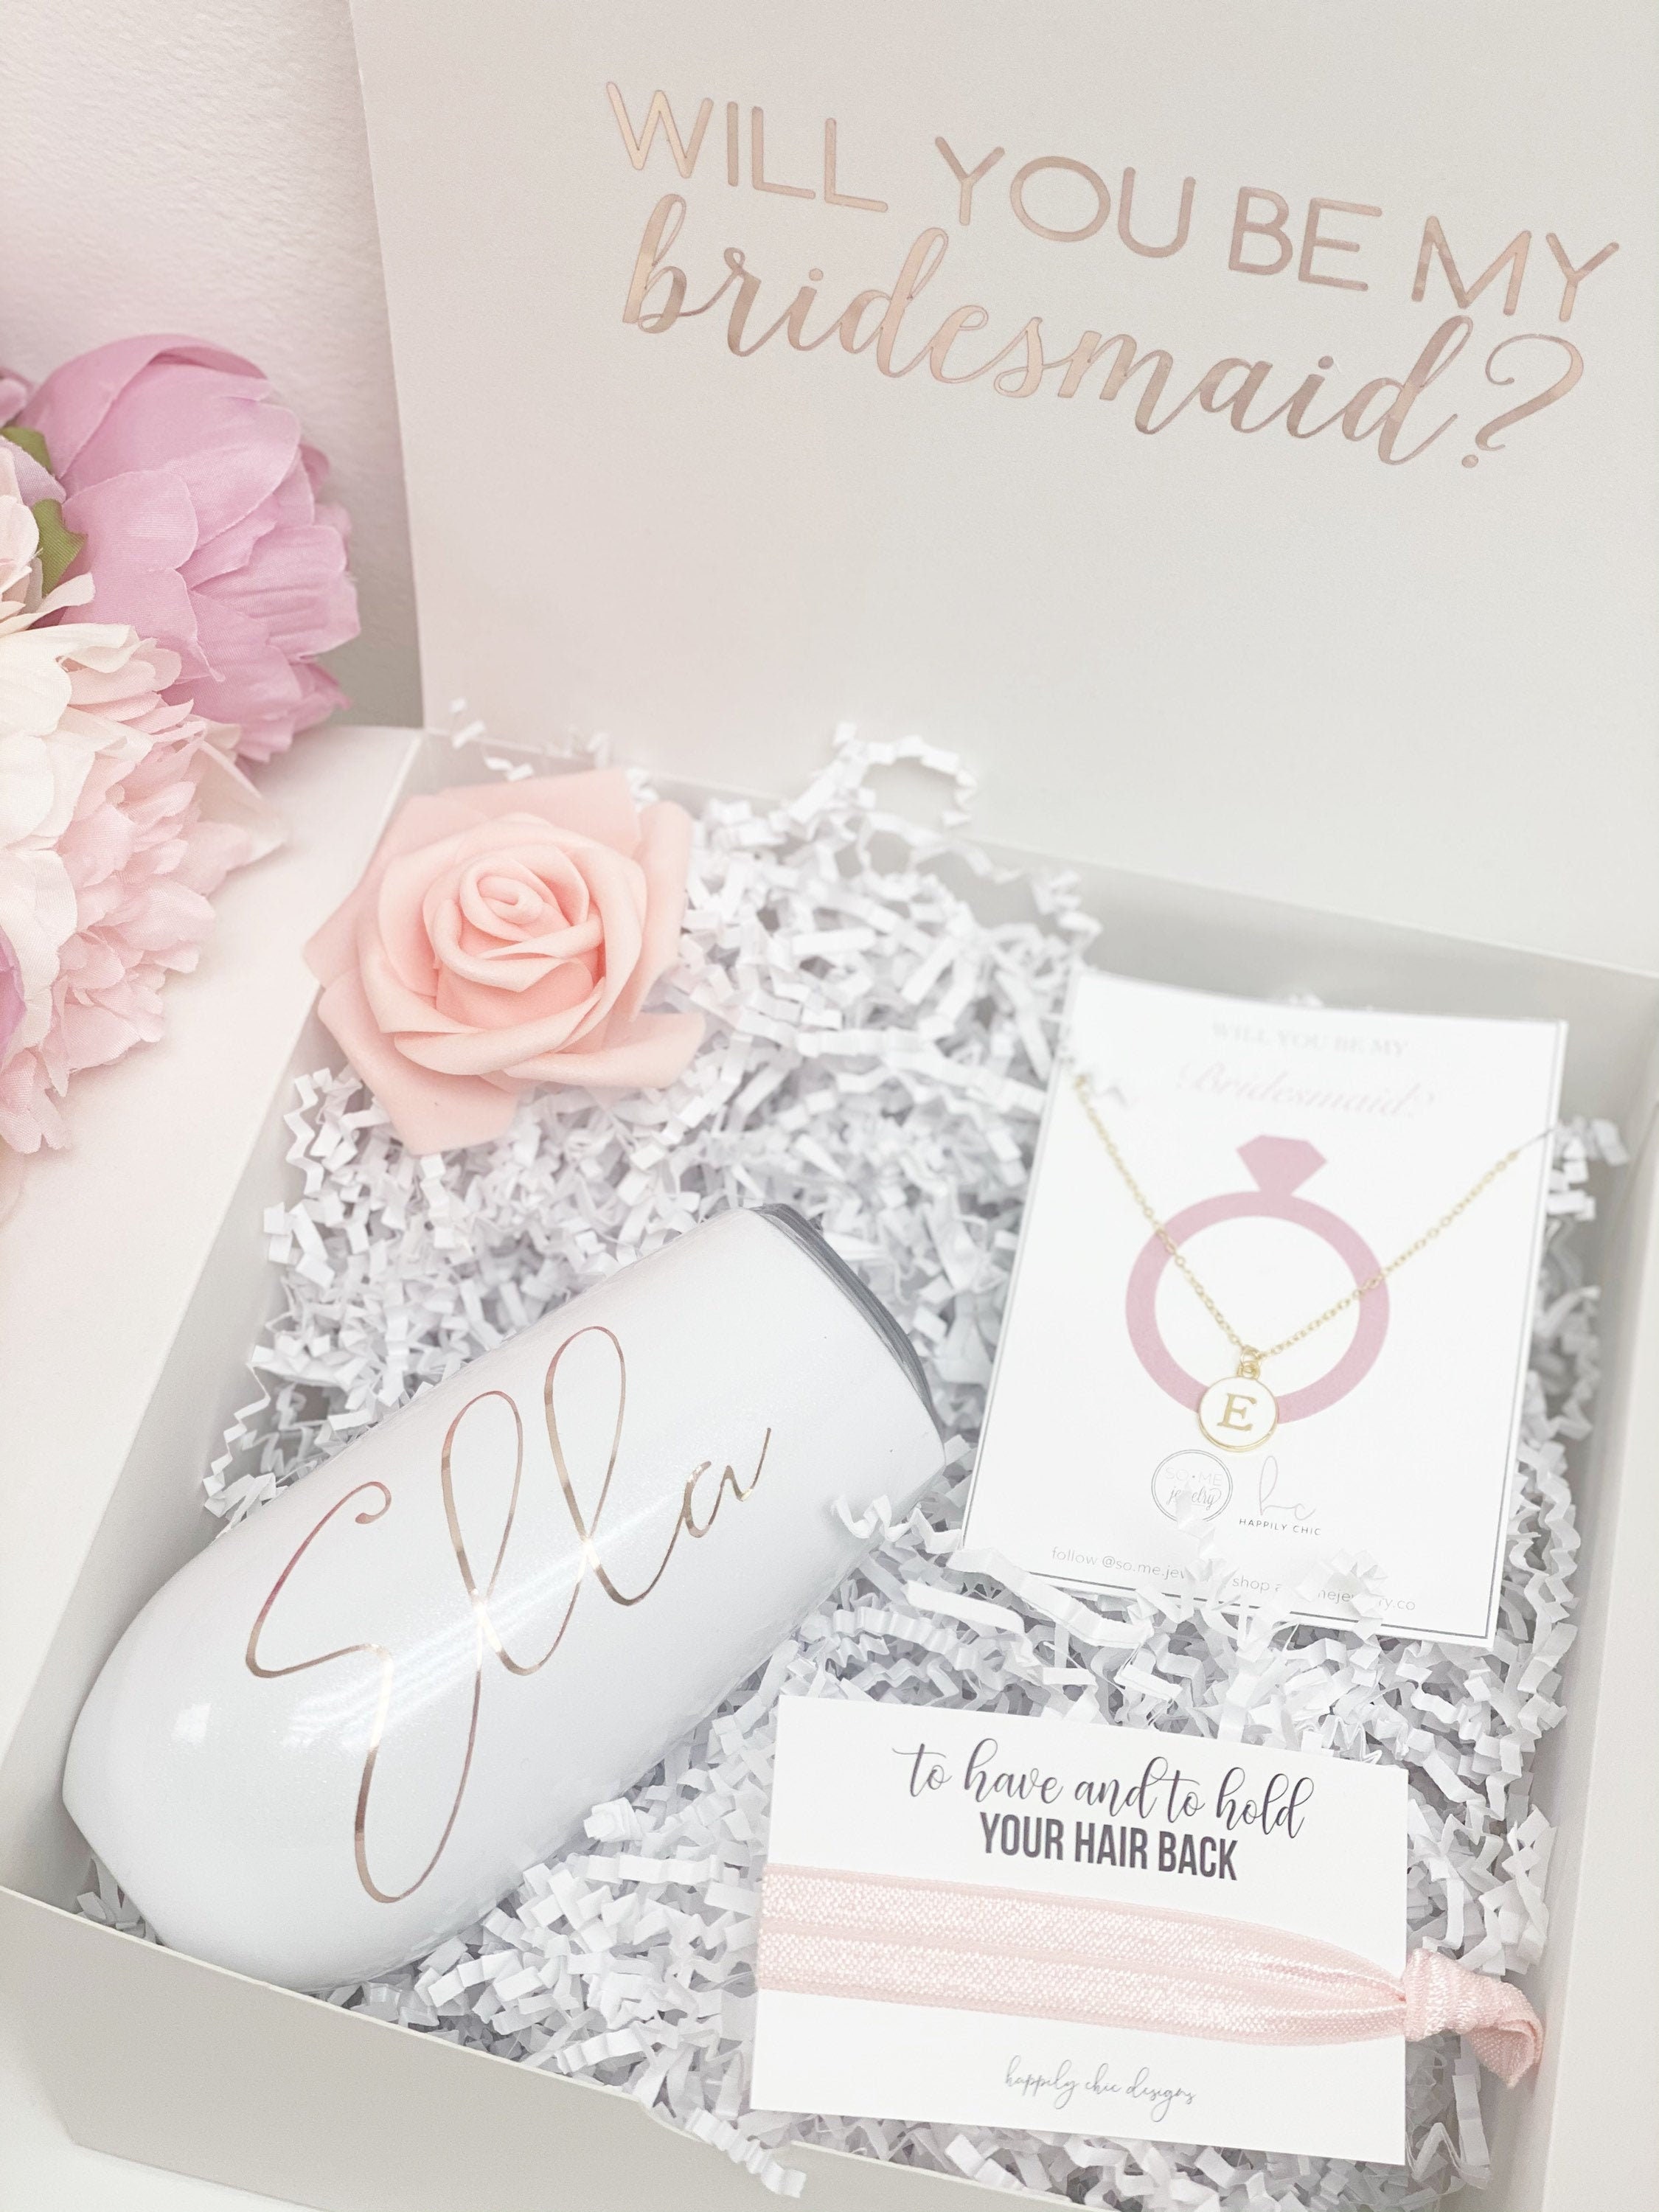 Bridesmaid proposal box will you be my bridesmaid gift idea | Etsy